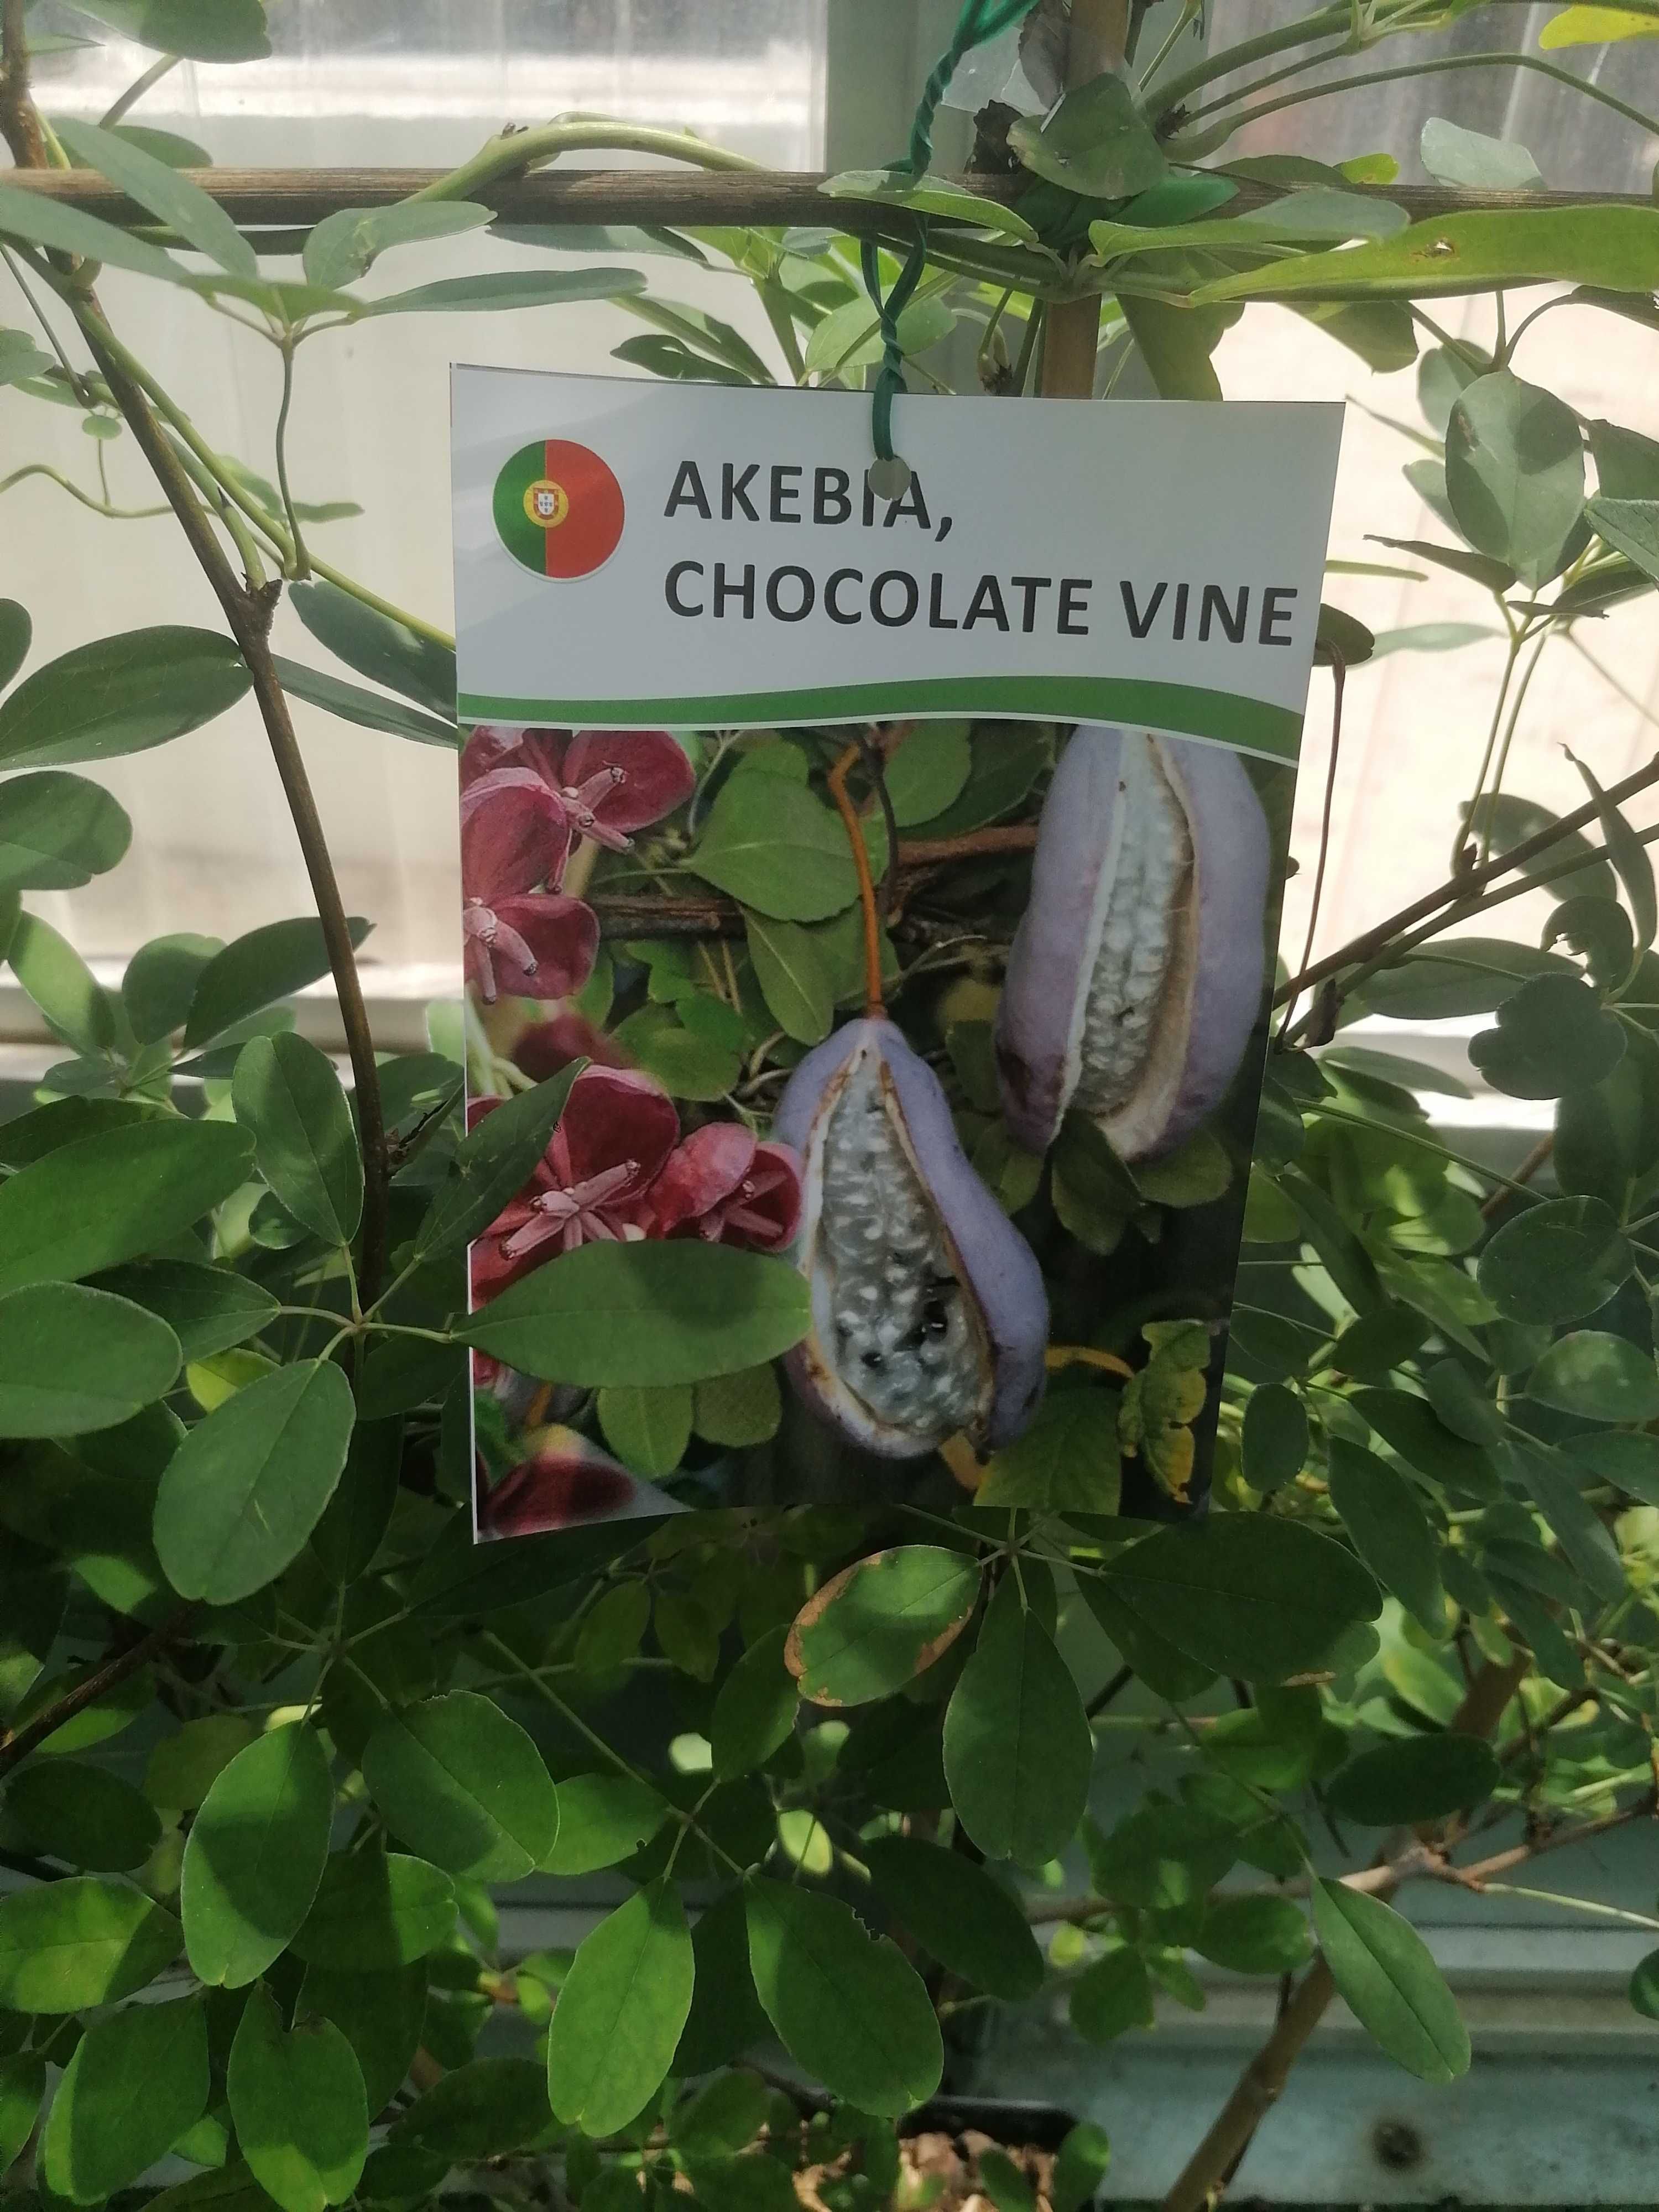 Akebia chocolate Vine